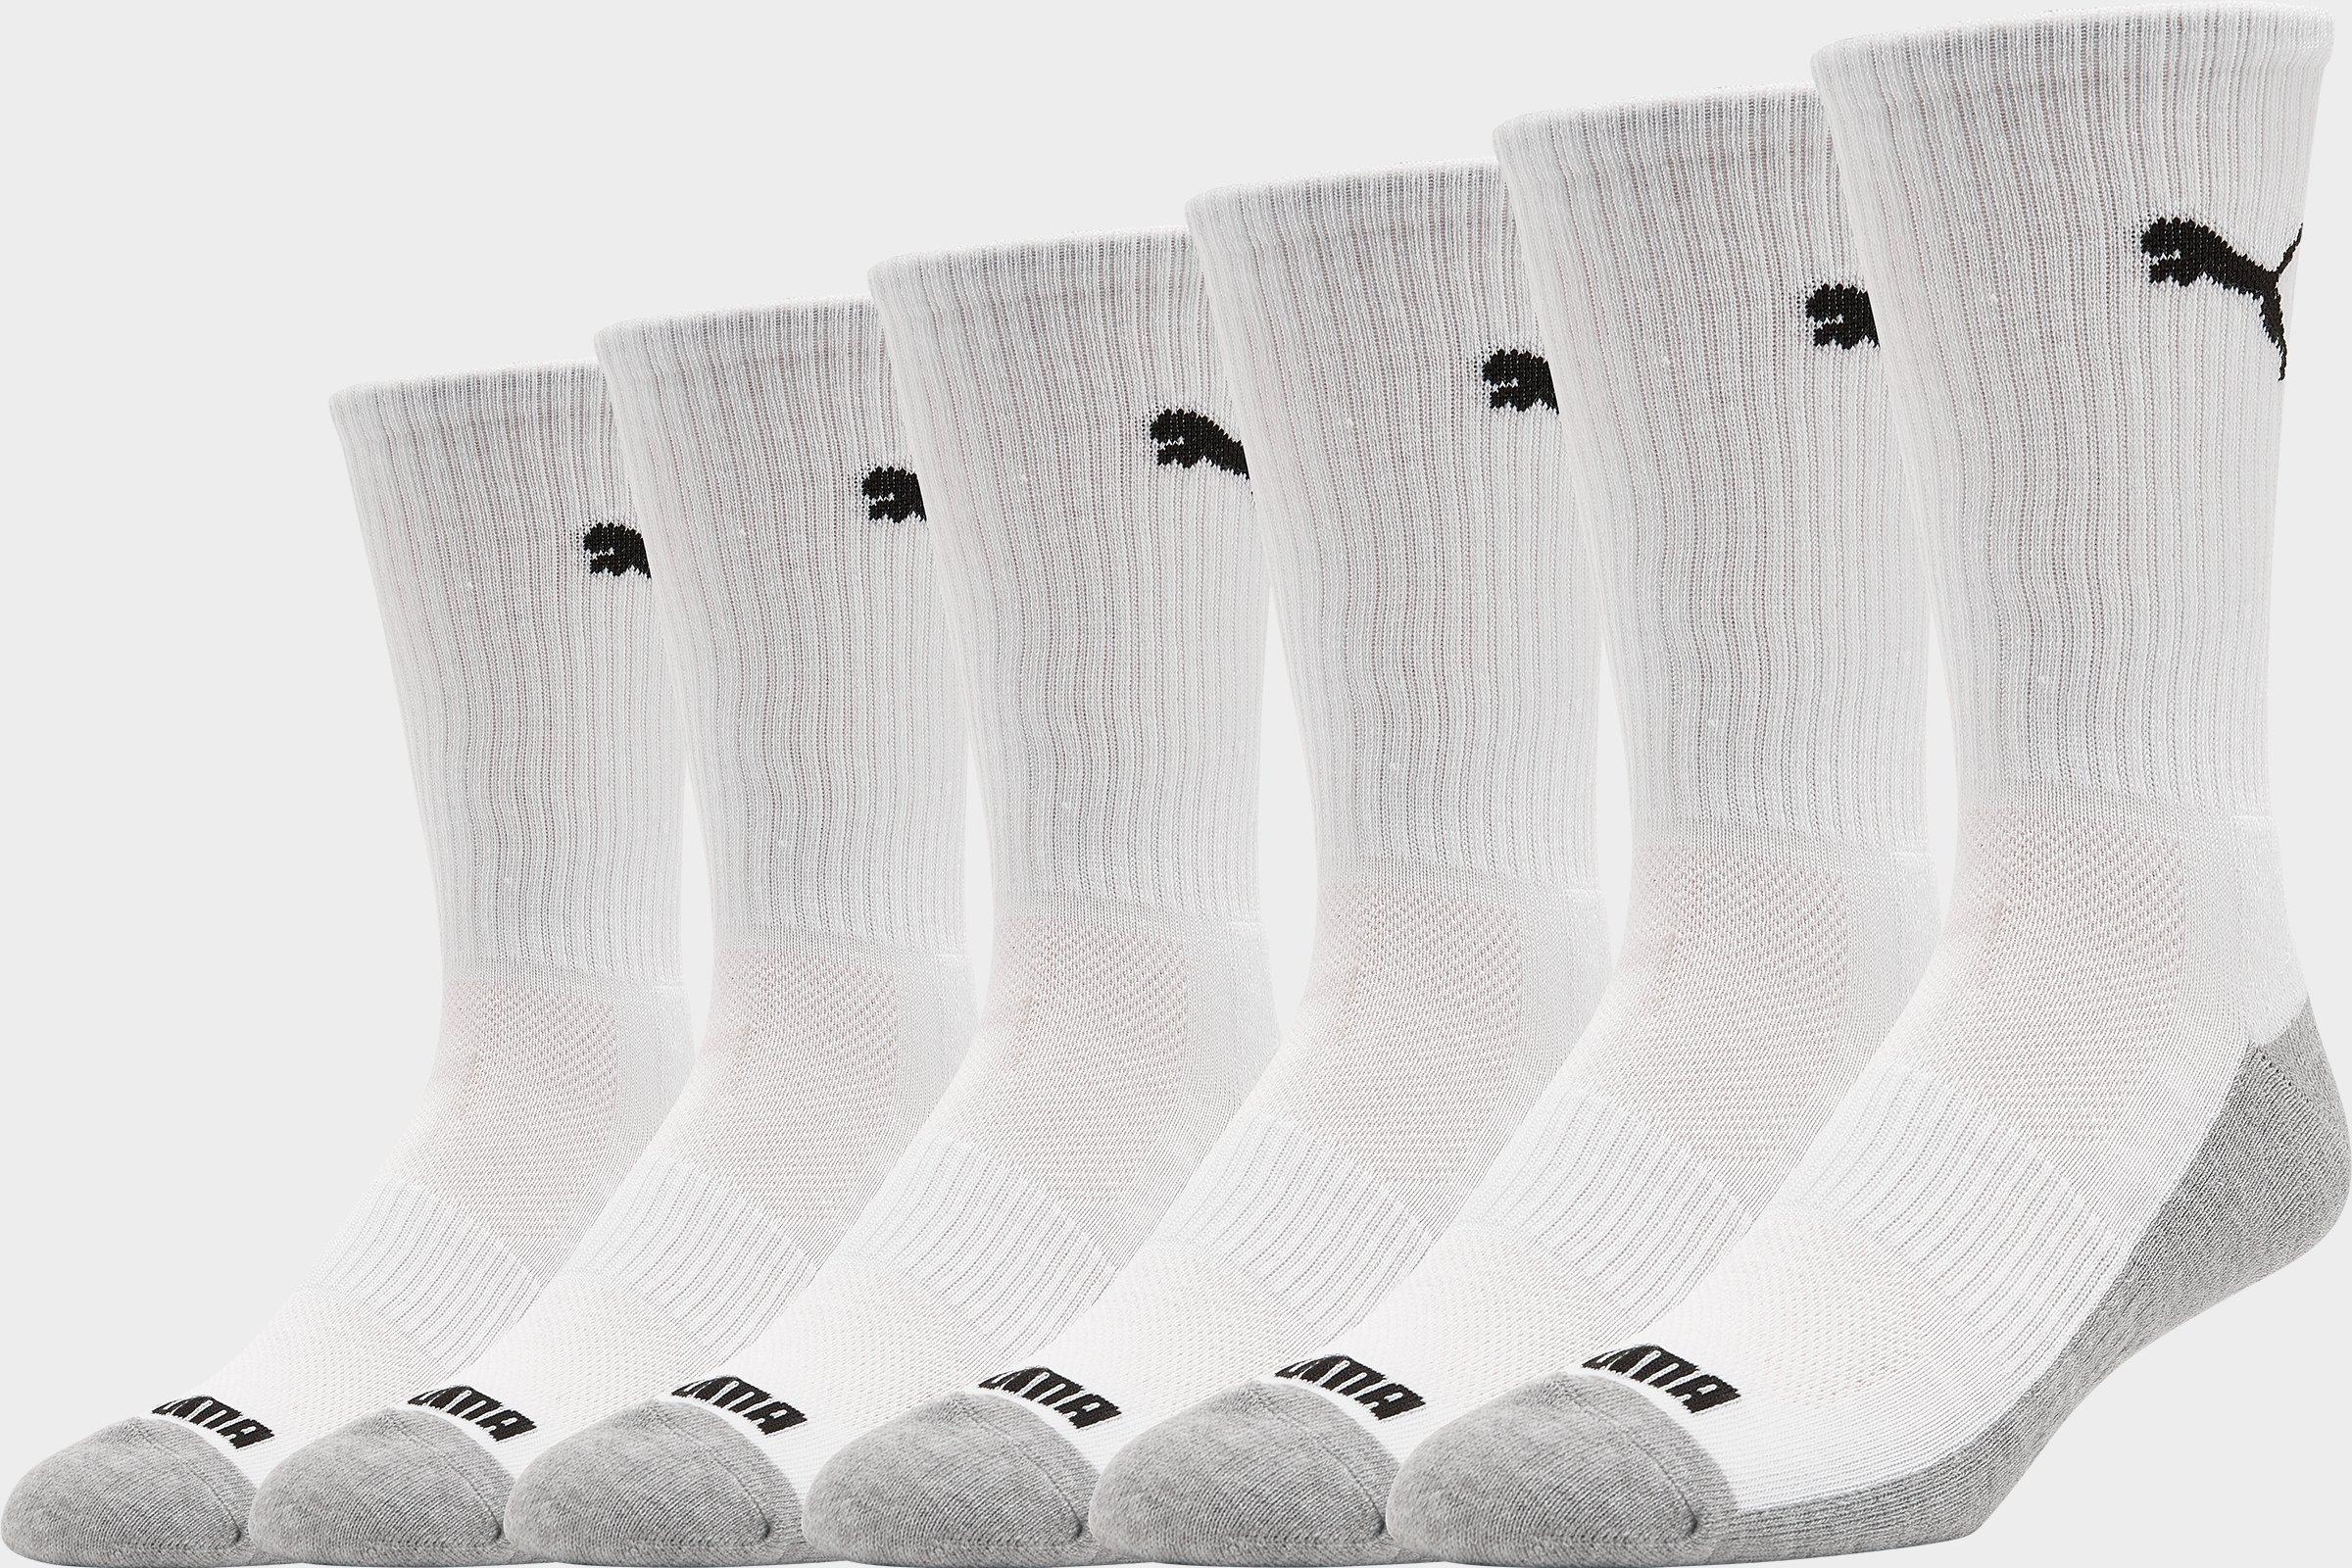 puma sports socks